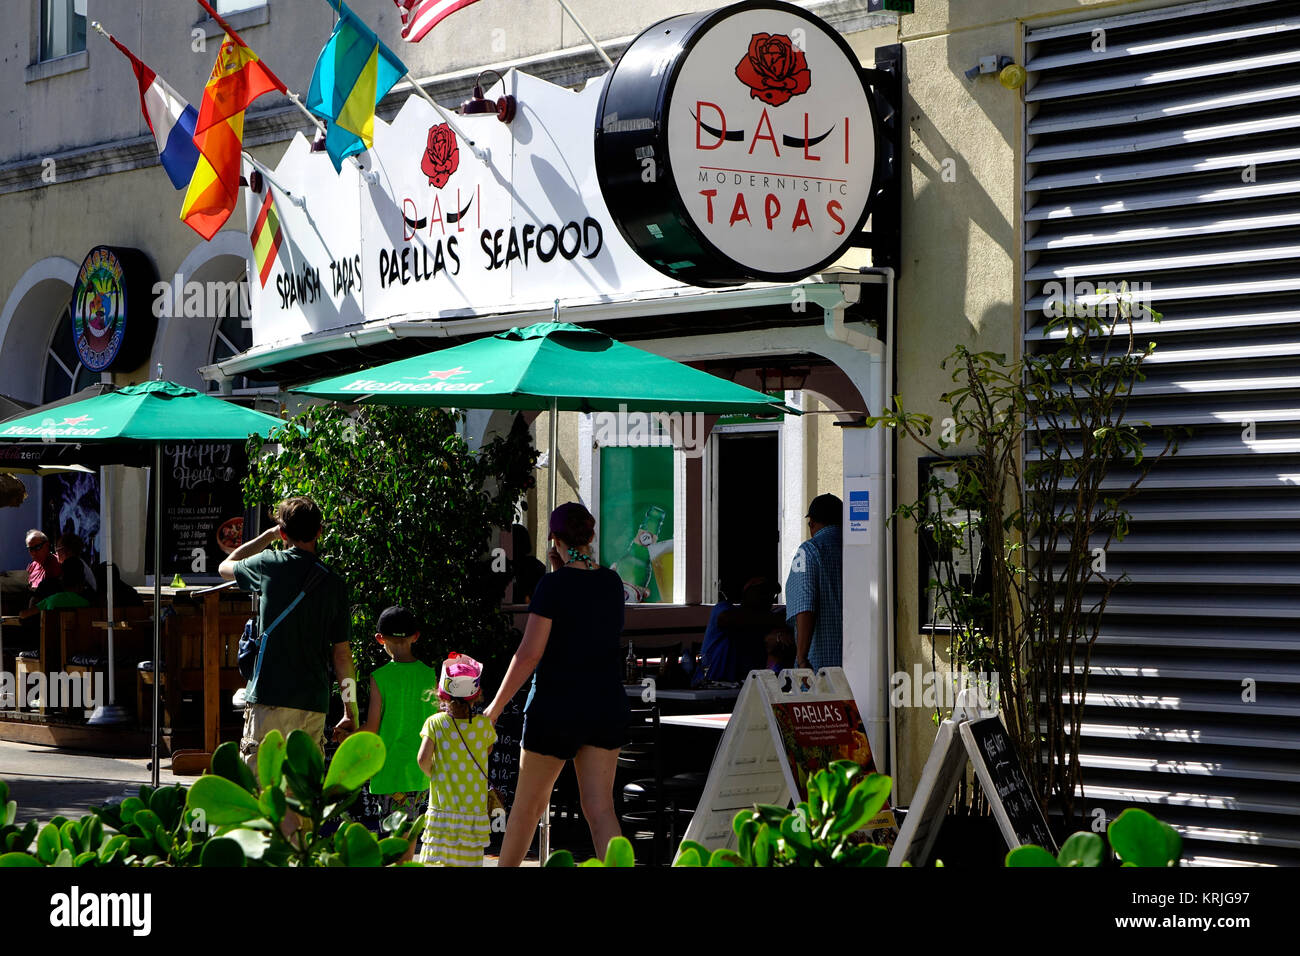 Dalí es un restaurante de comida fresca de propiedad local en Nassau, Bahamas sirven mariscos y bebidas. Foto de stock